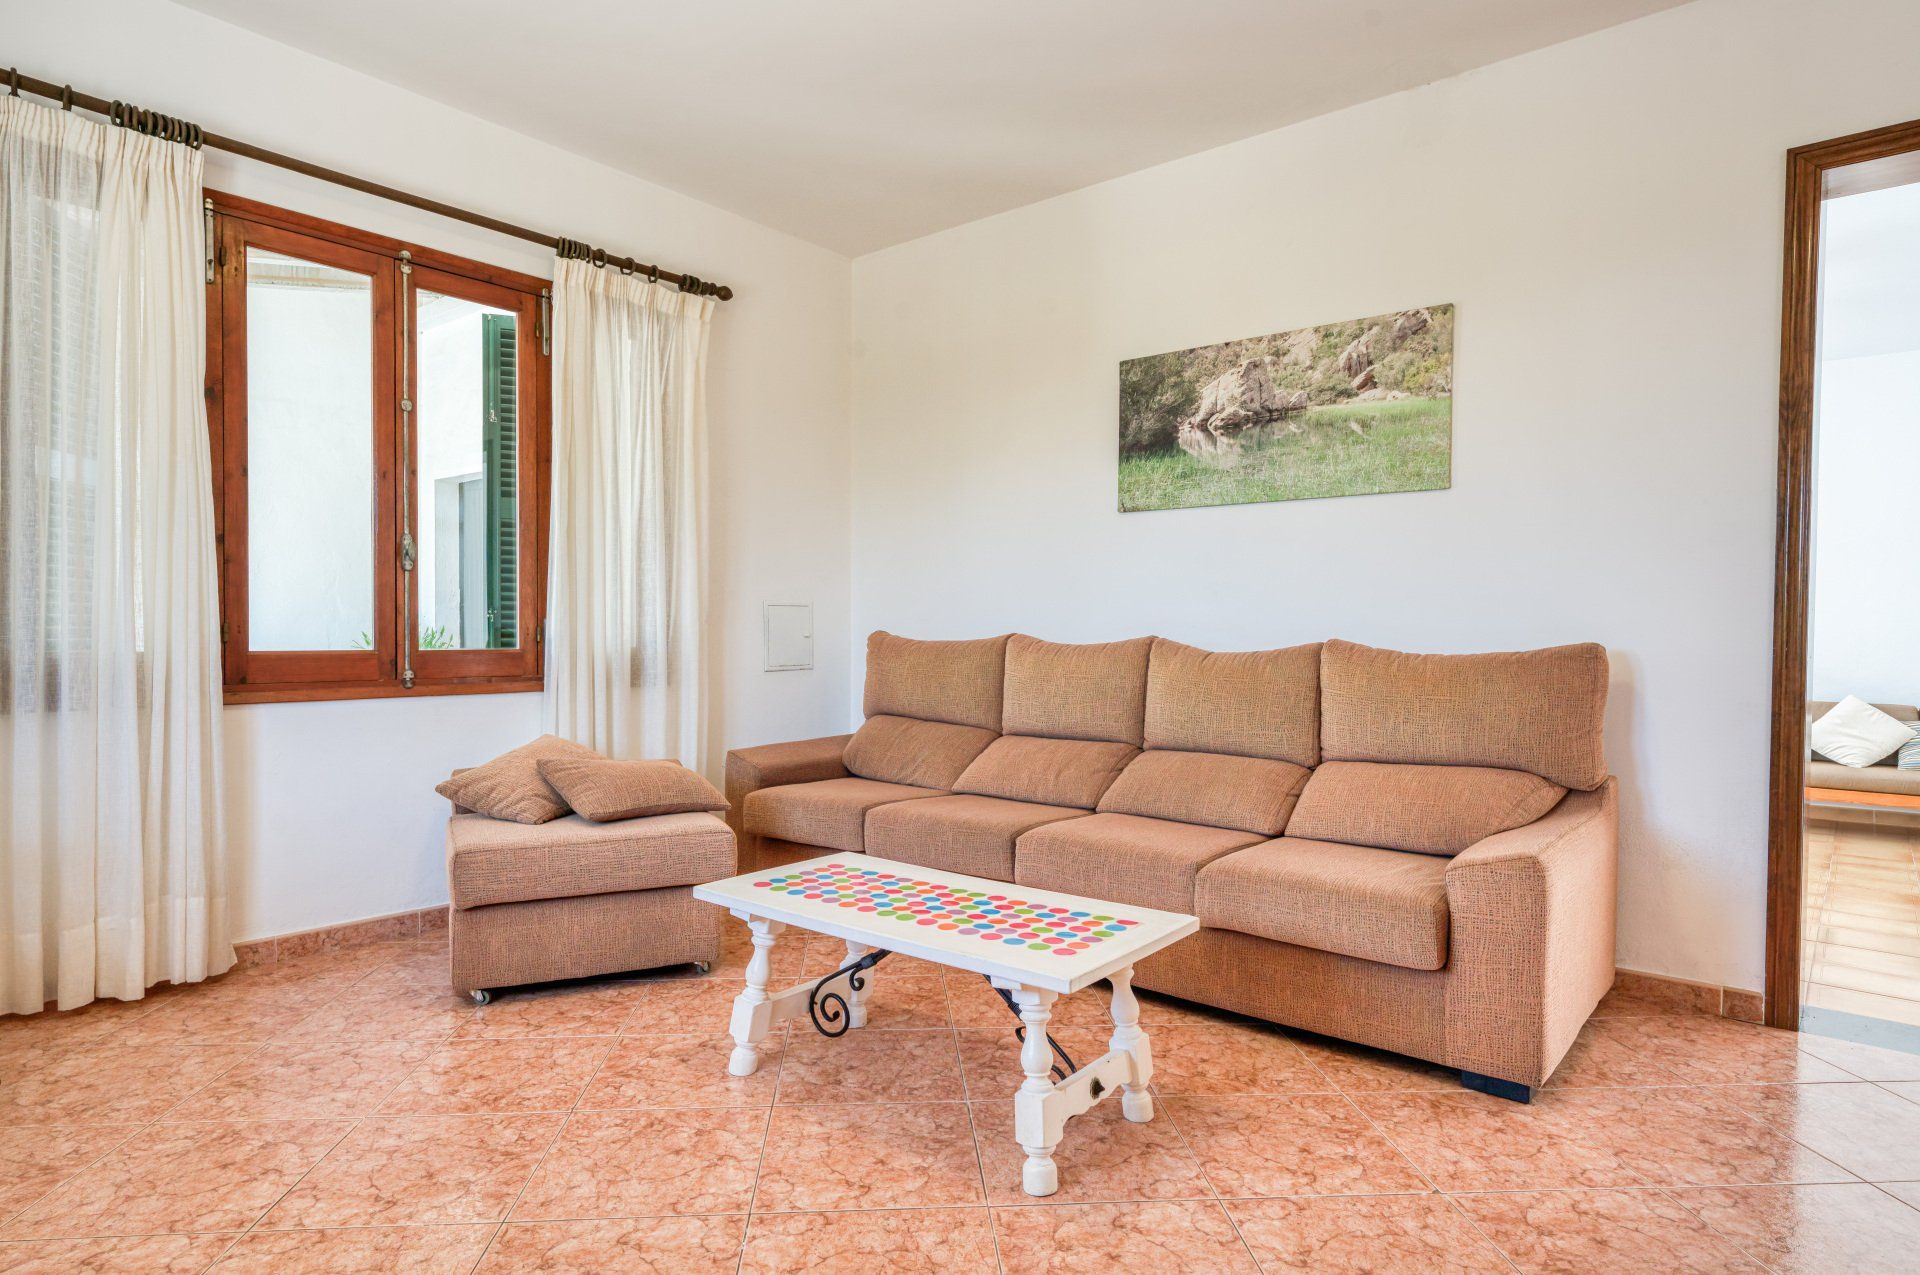 Foto del sofá del salón de Villa Mascaró, casa de alquiler de vacaciones en Menorca.